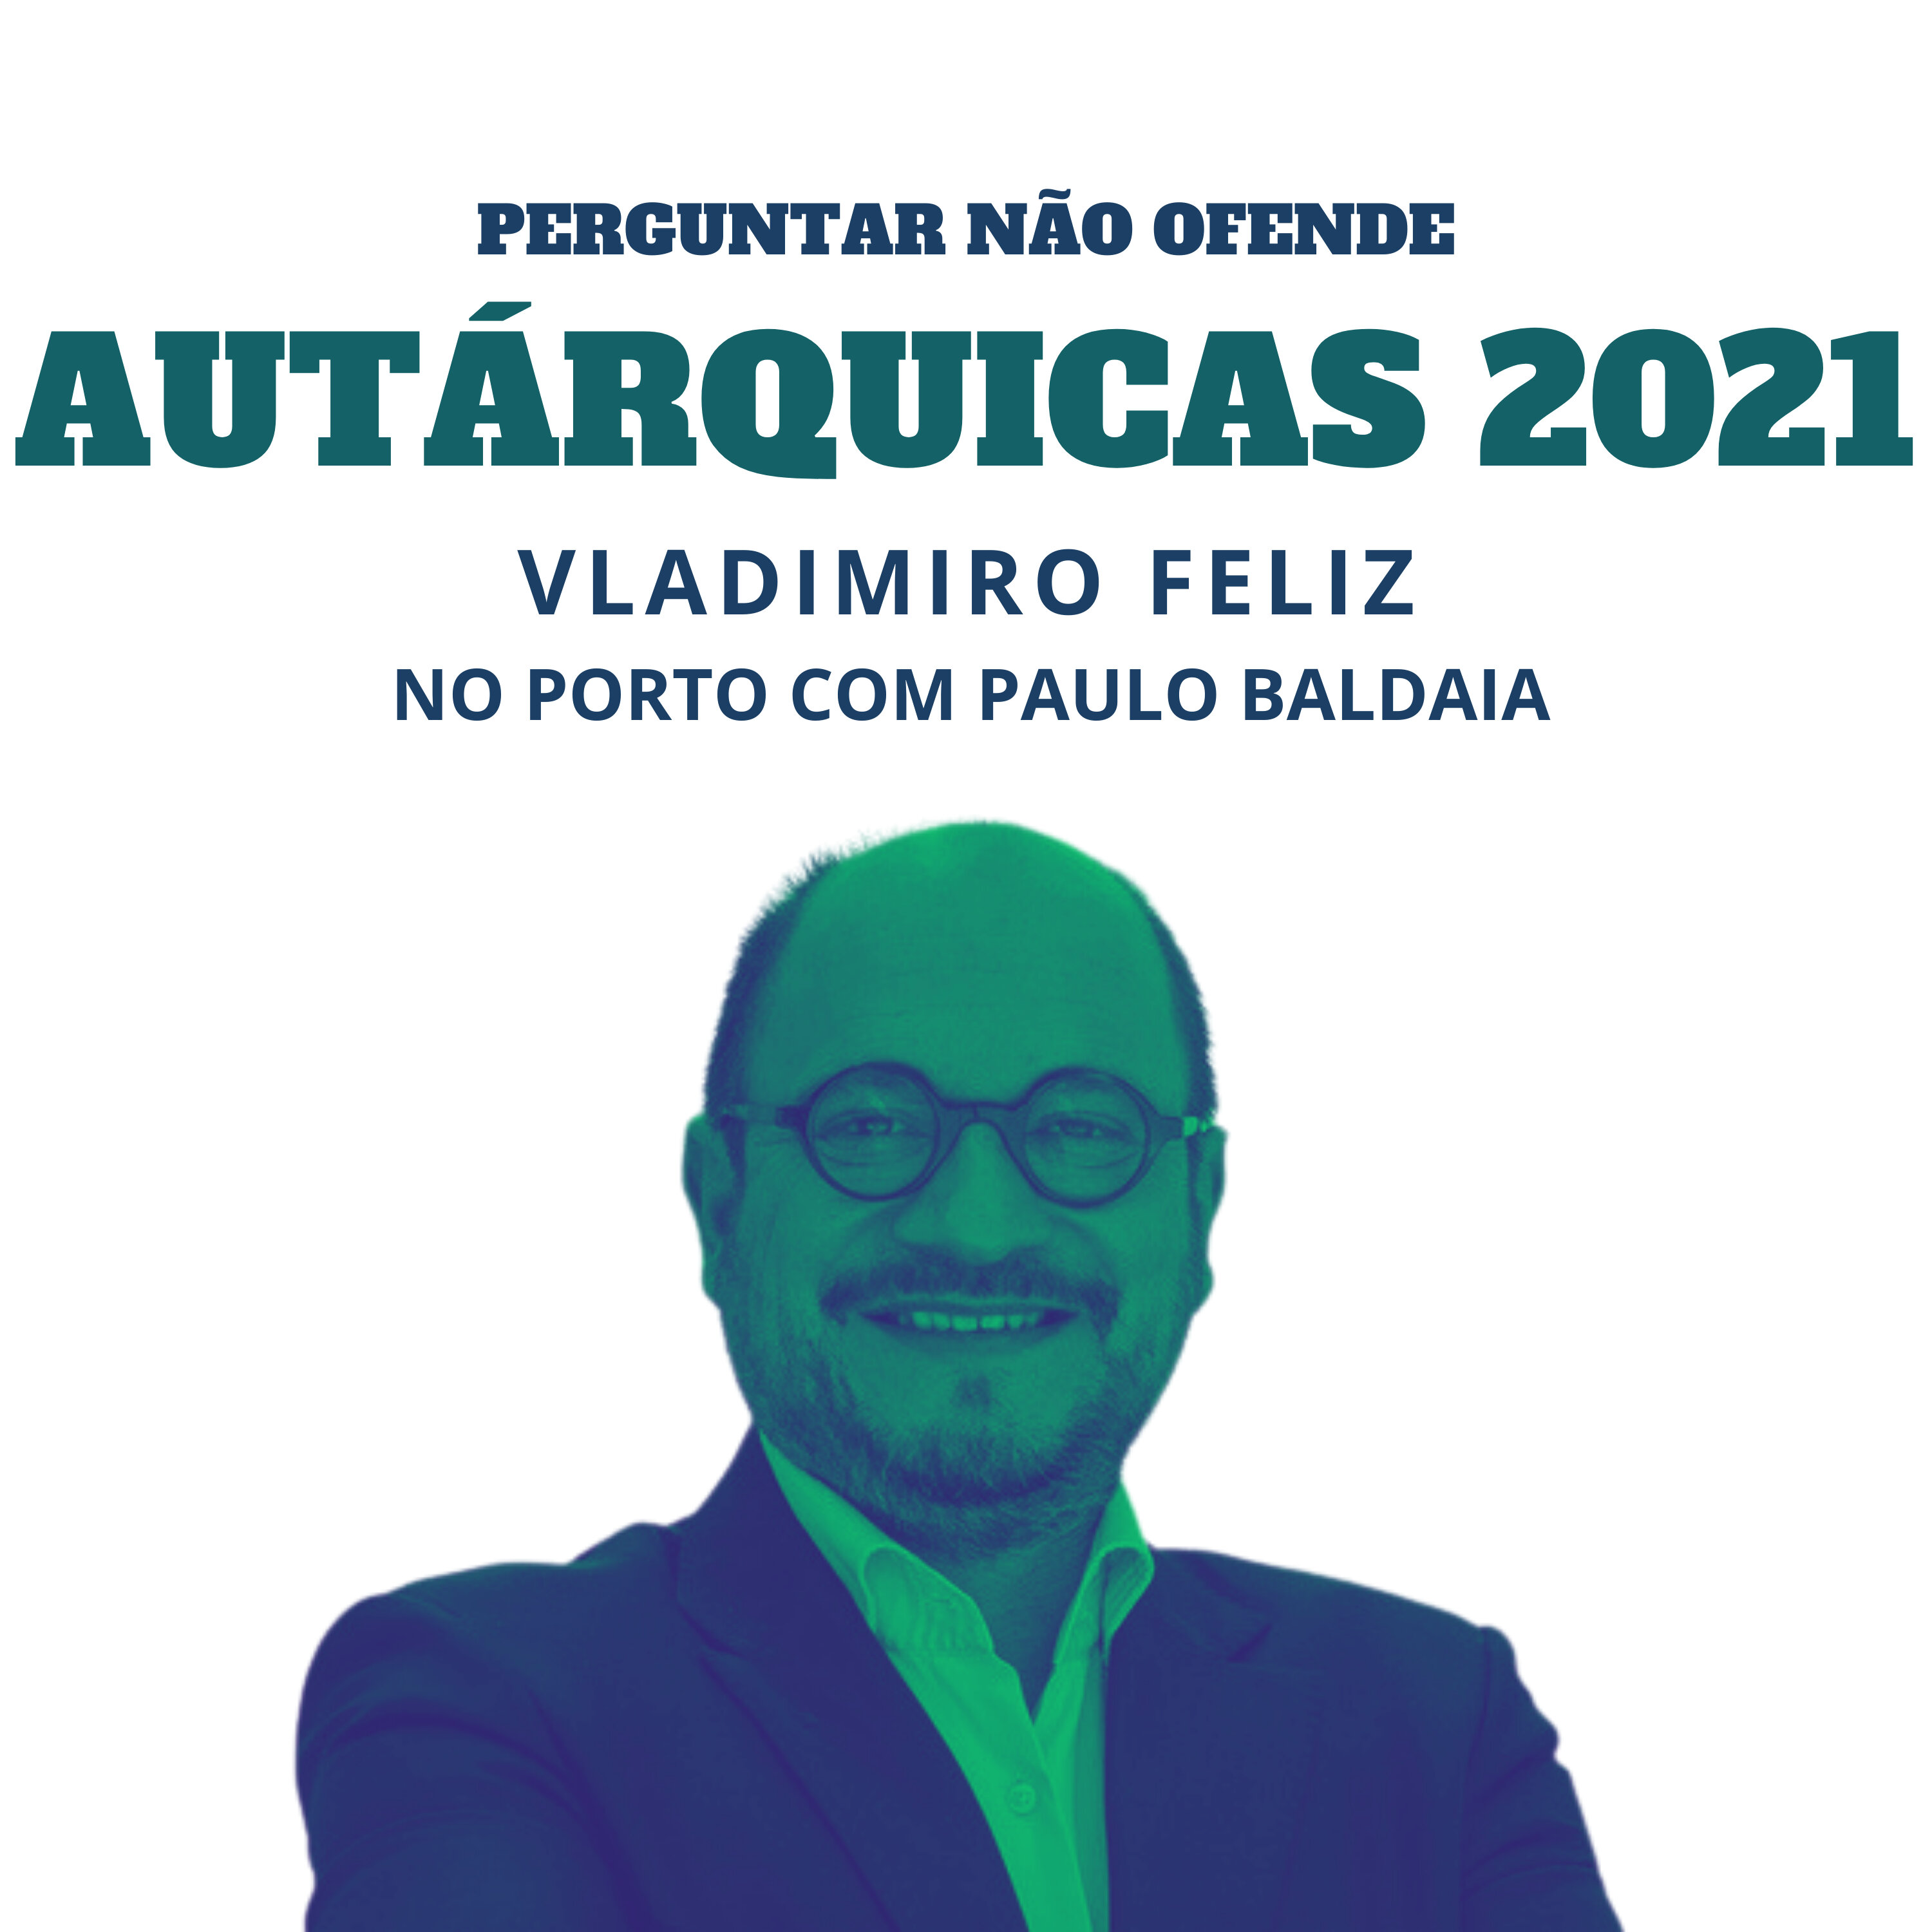 Autárquicas 2021: Vladimiro Feliz conversa com Paulo Baldaia, no Porto